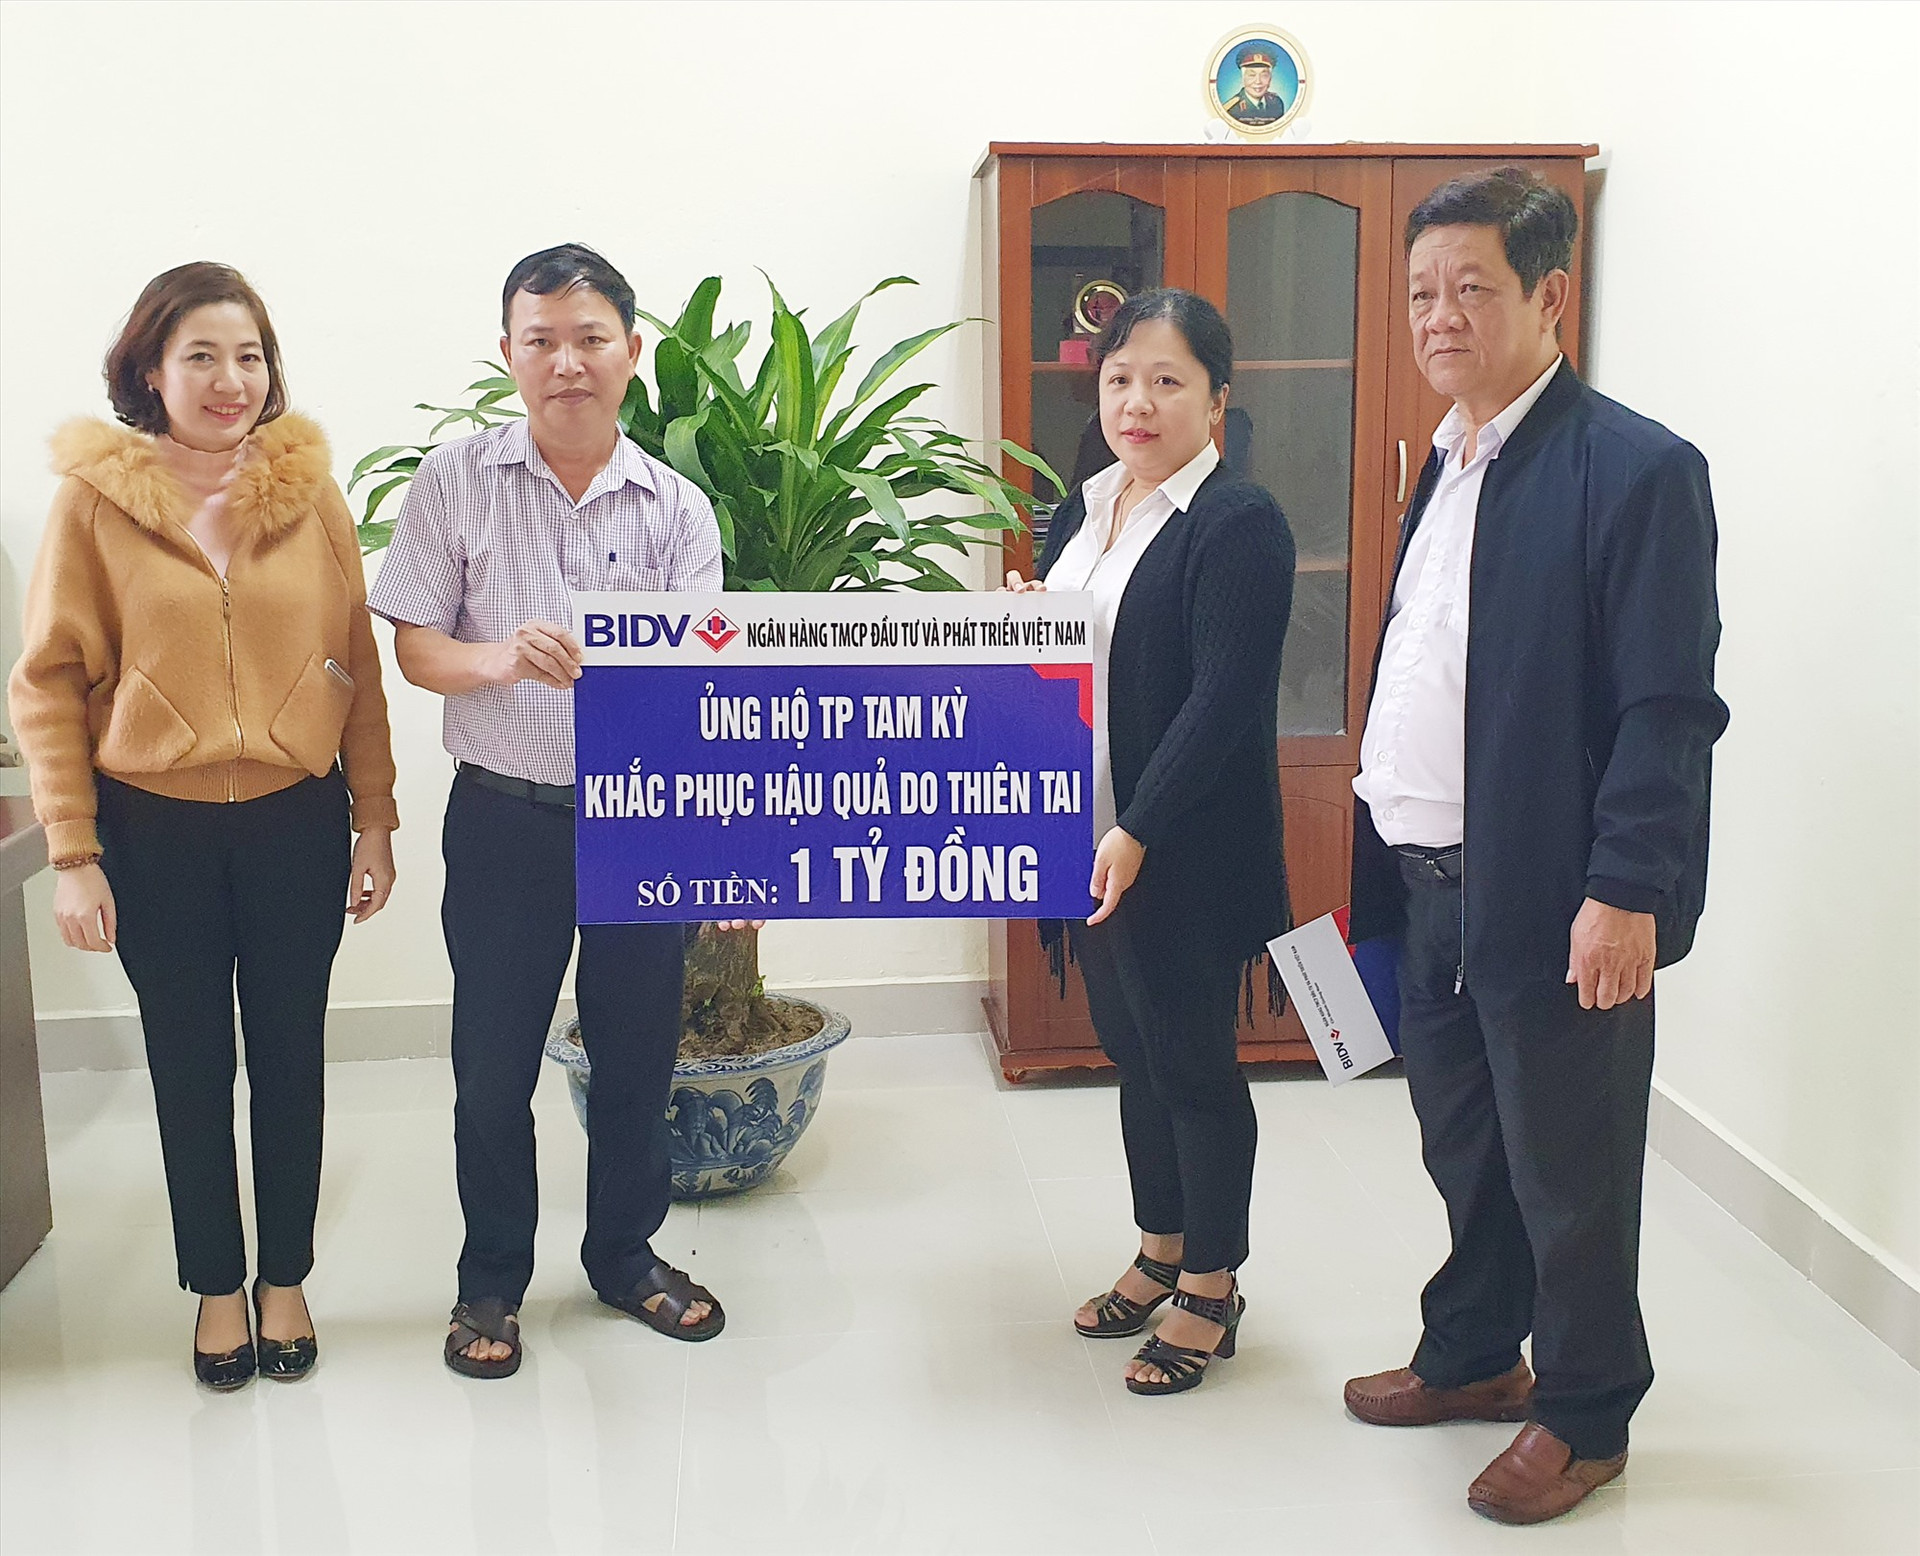 BIDV Việt Nam hỗ trợ 1 tỷ đồng cho thành phố Tam Kỳ.